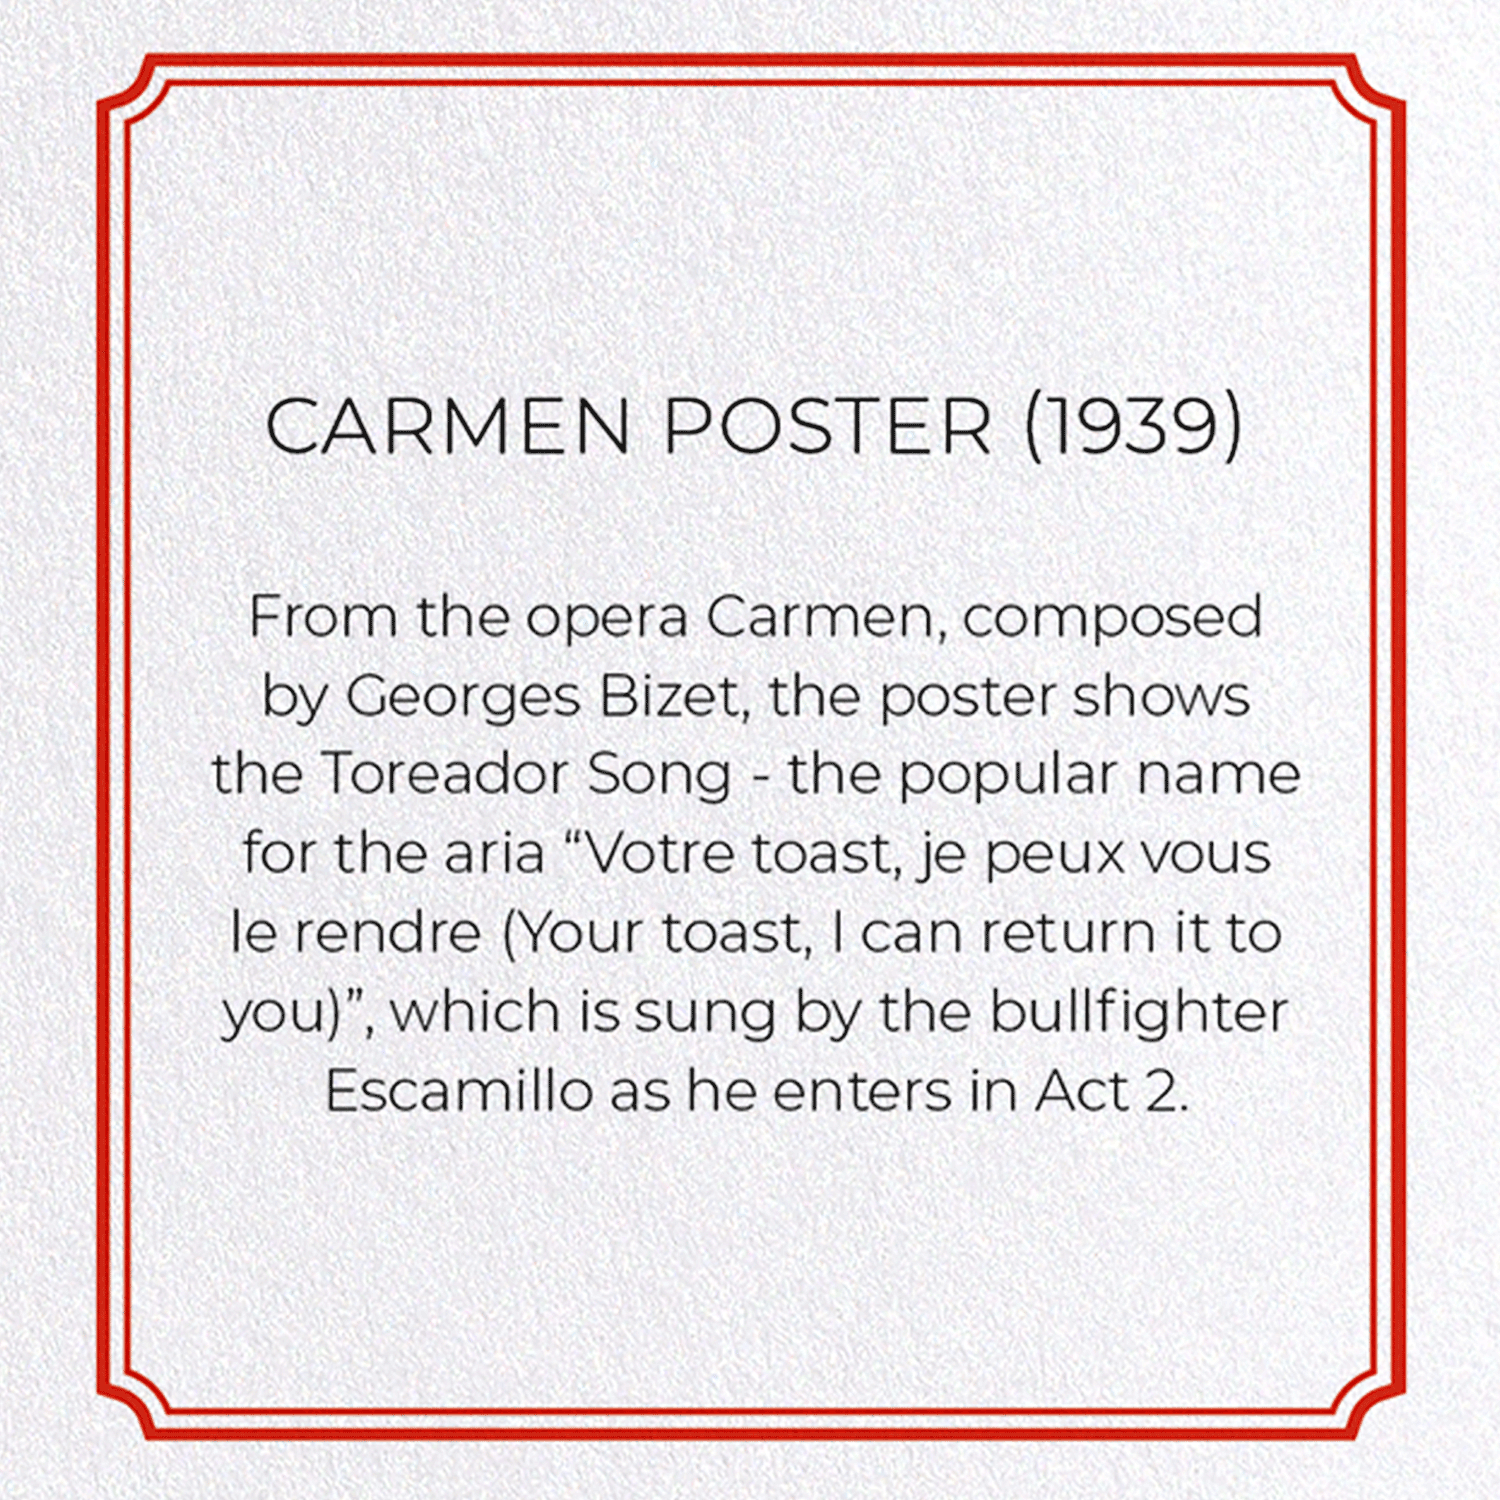 CARMEN POSTER (1939)